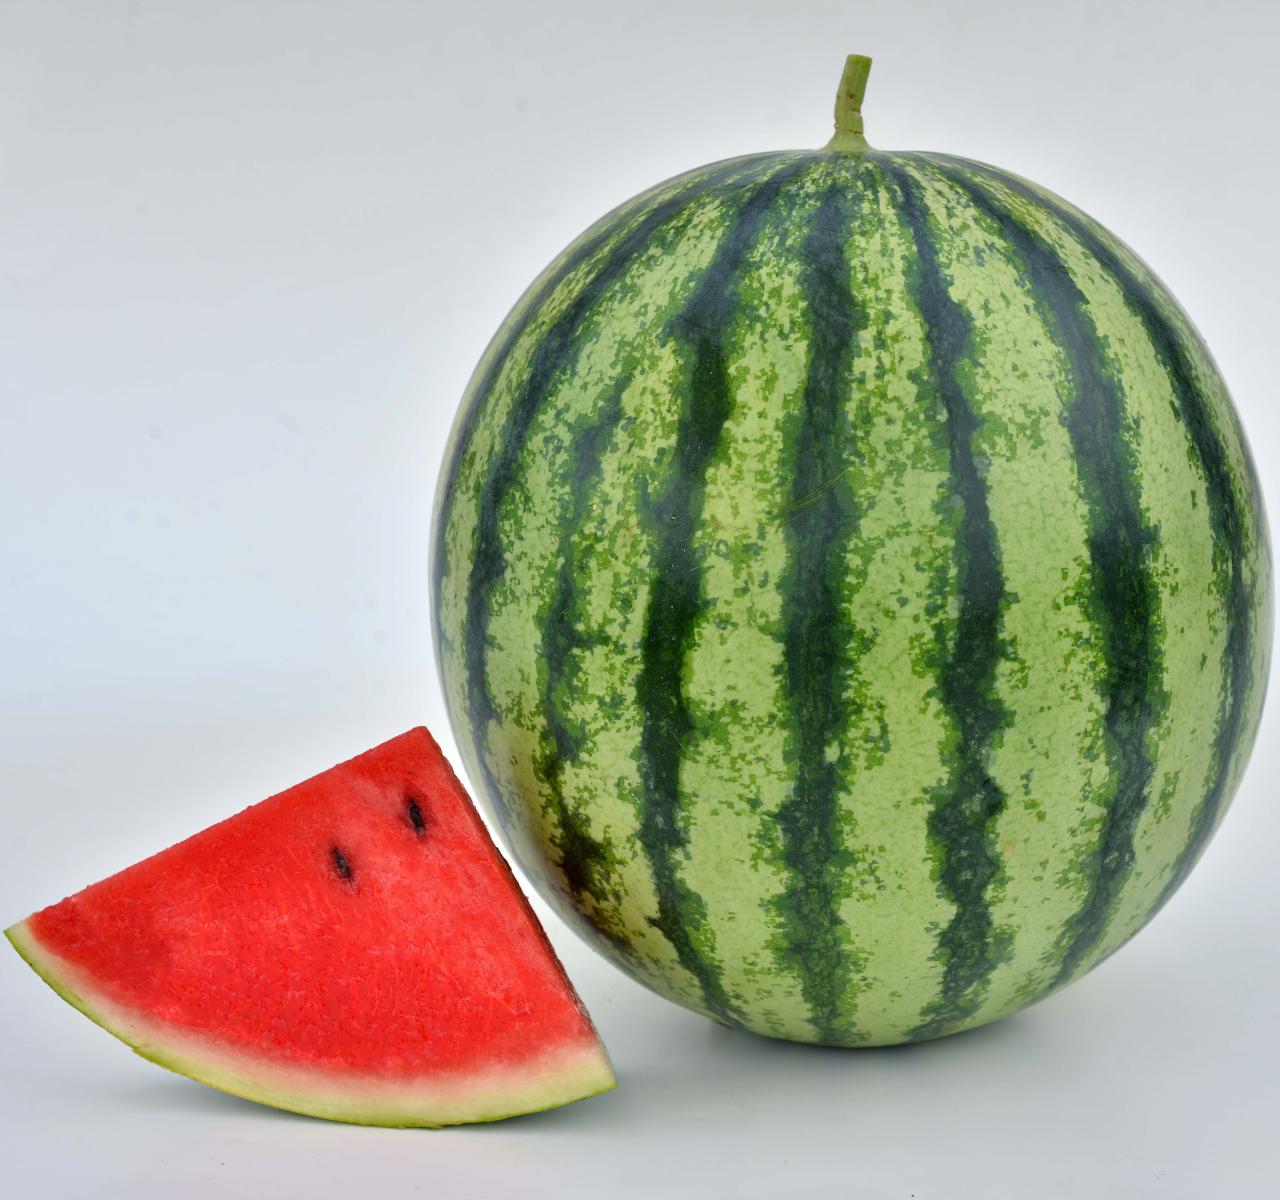 Image of 'Mambo' watermelon. 